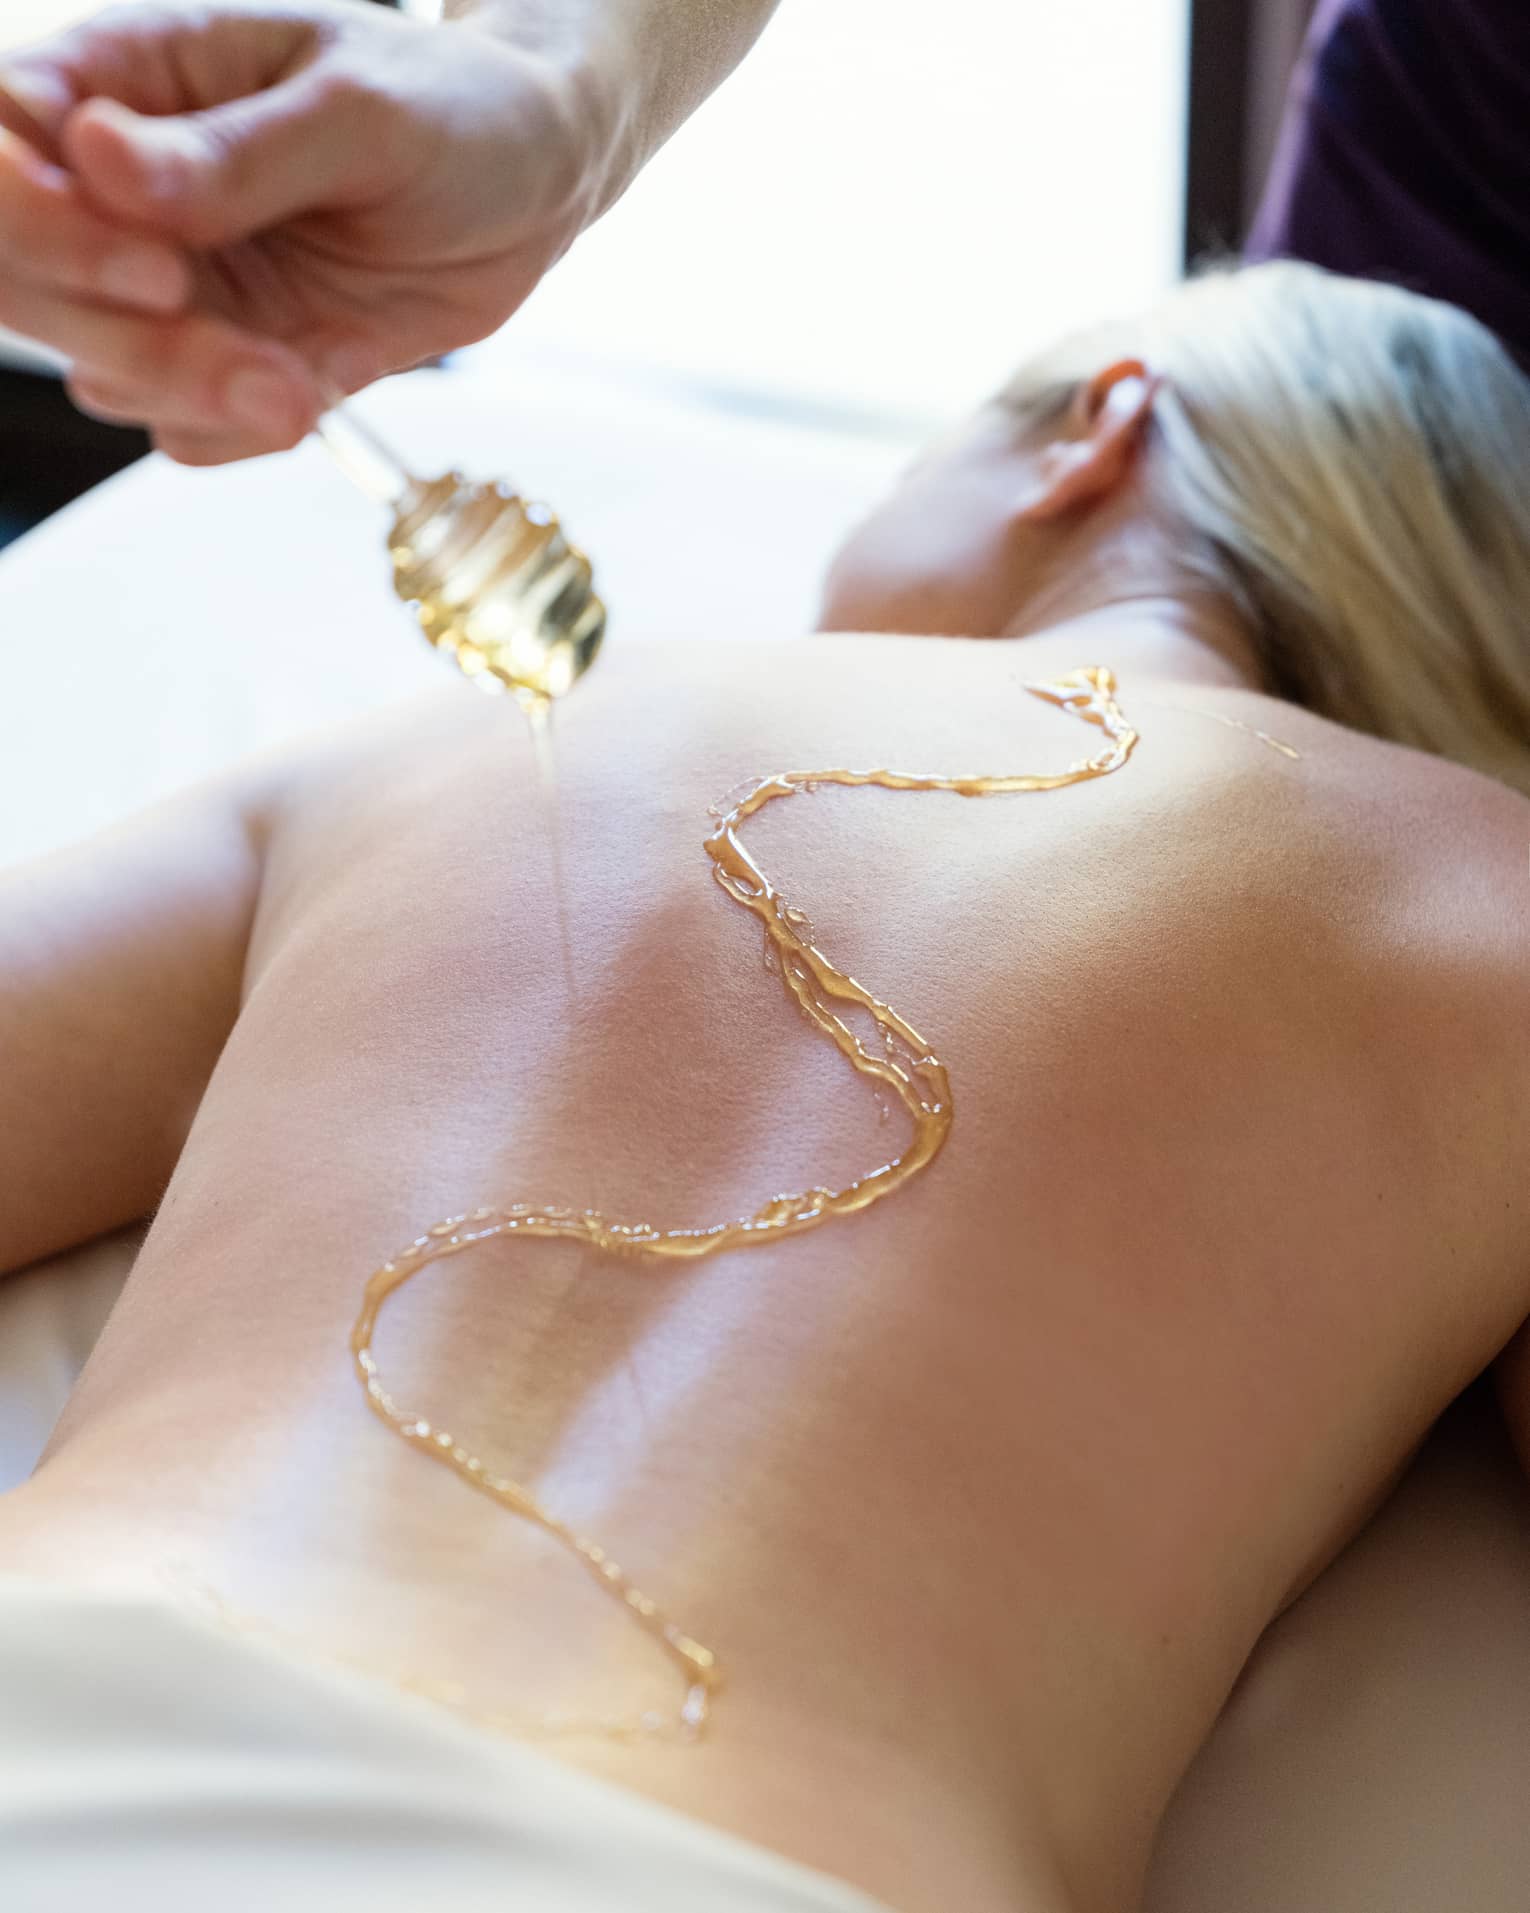 A woman receiving a massage using honey.